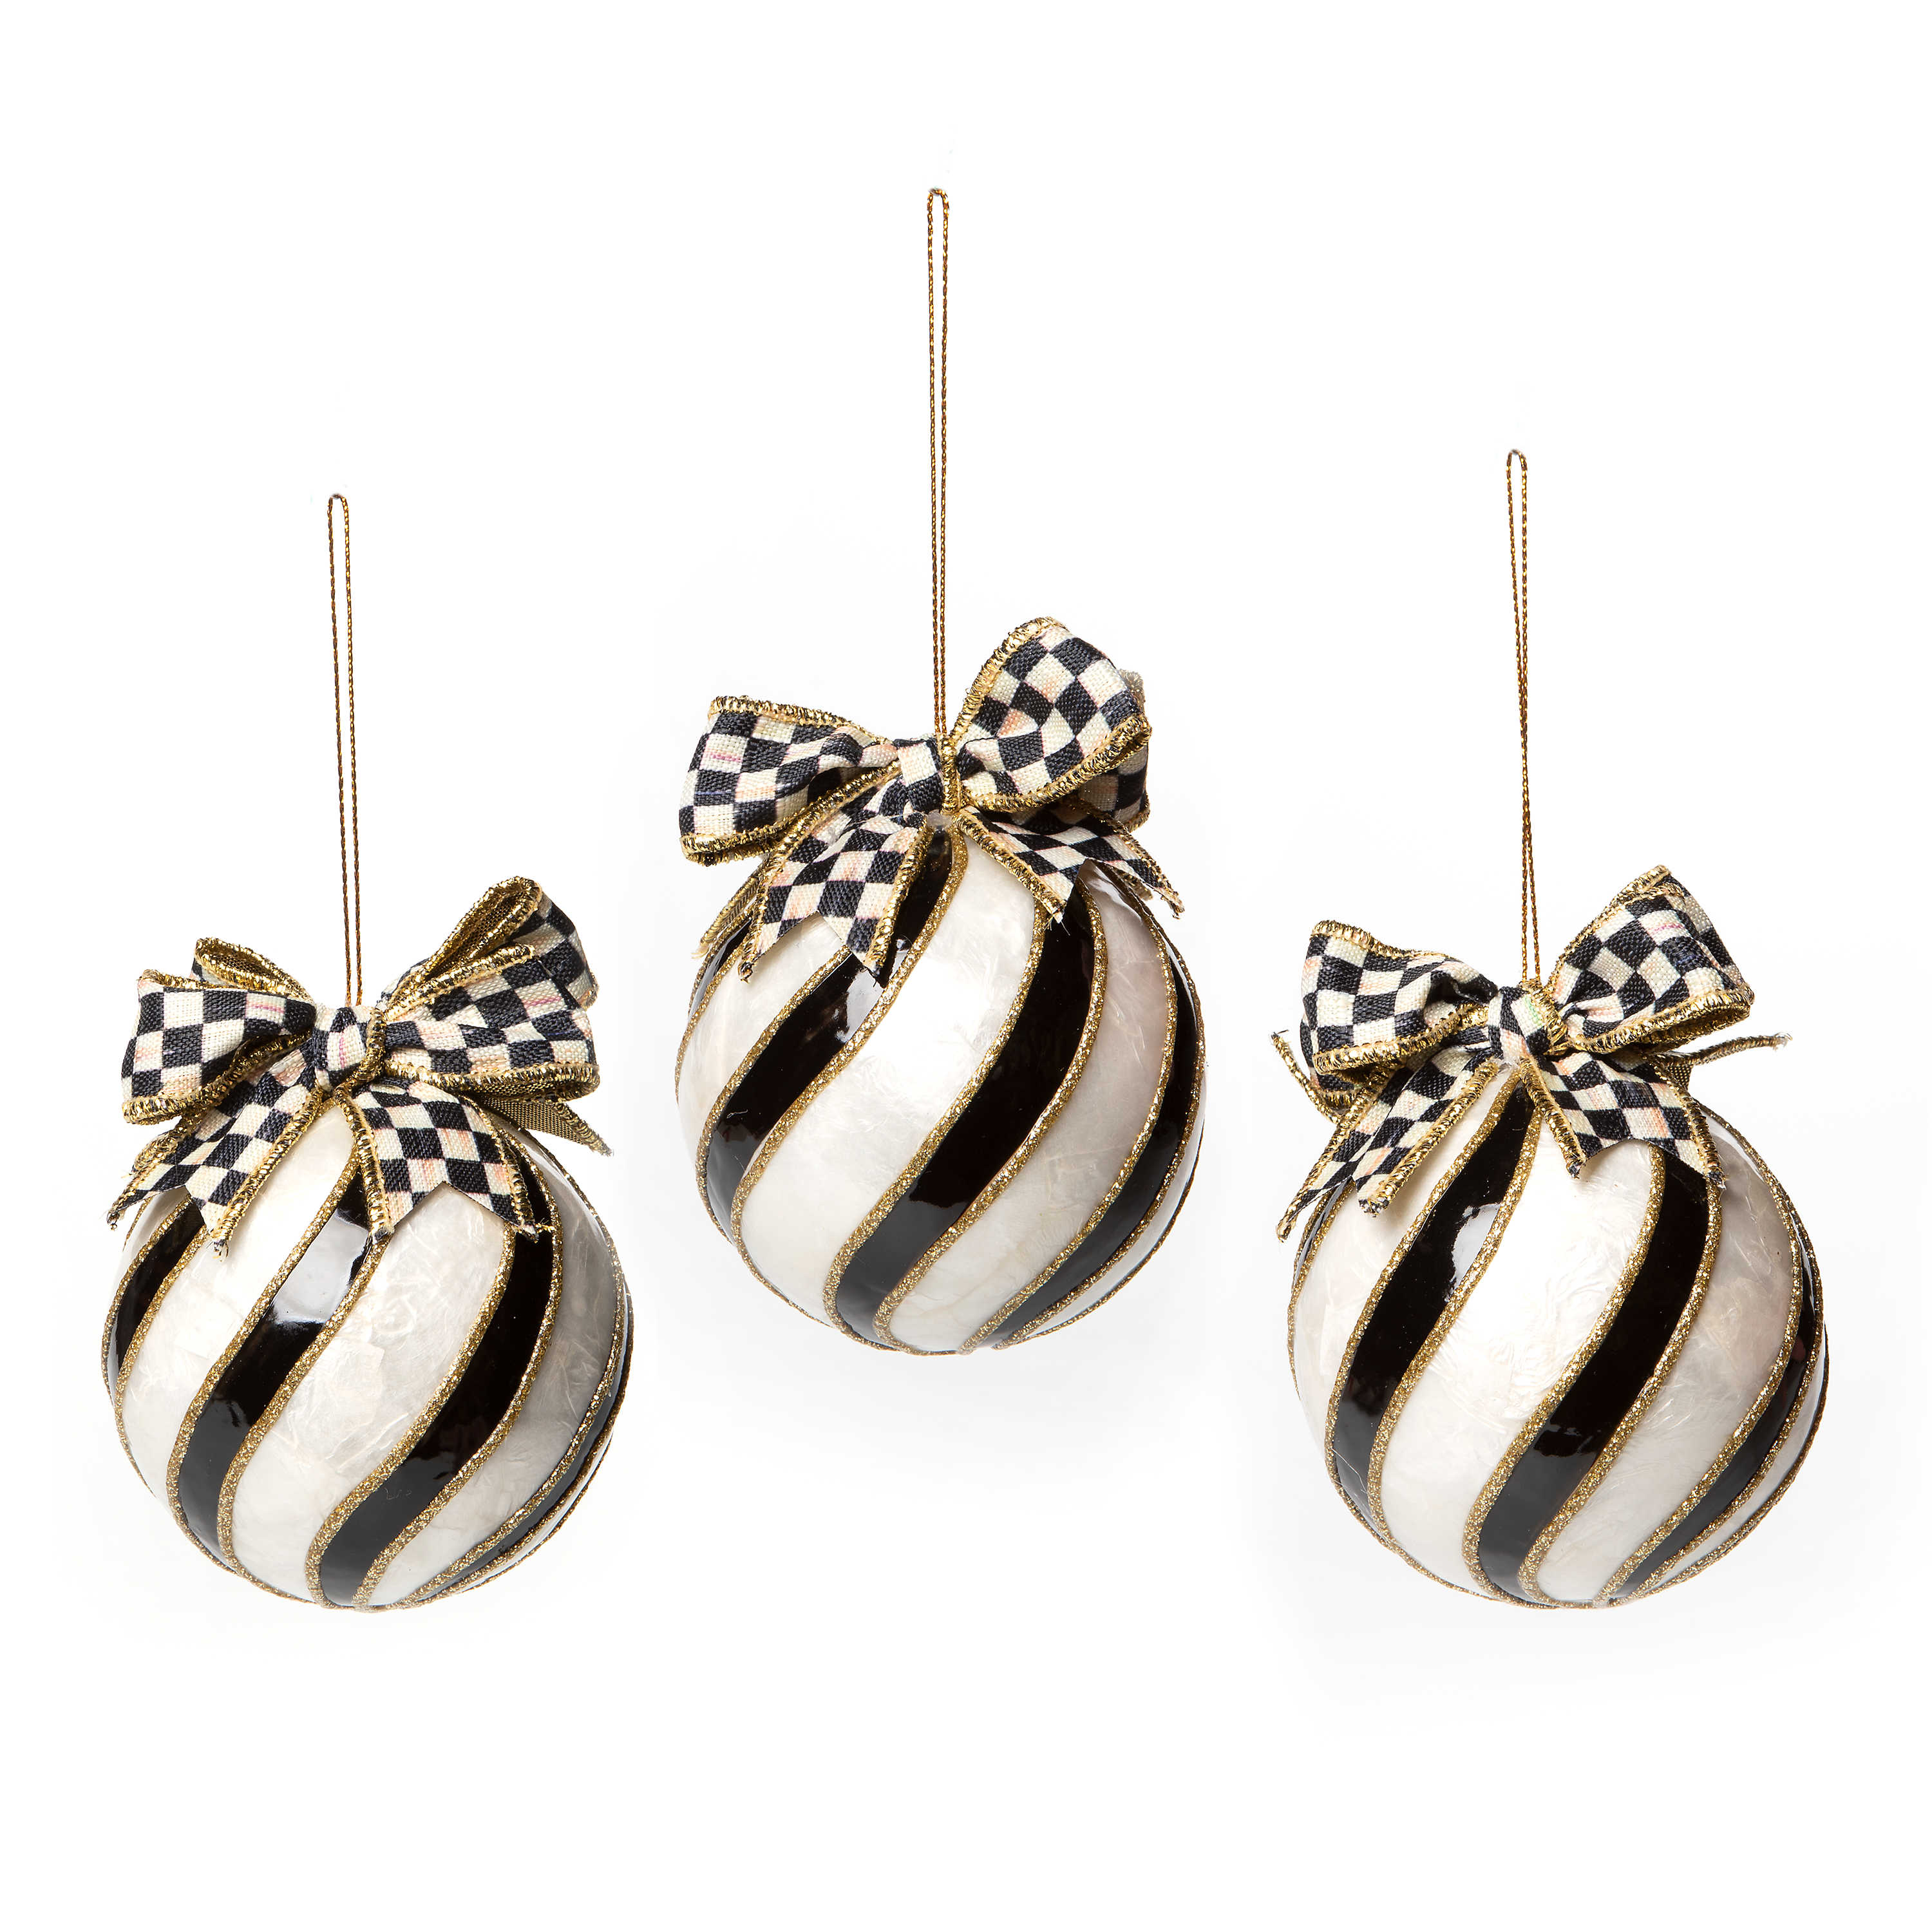 Striped Swirl Capiz Ornaments - Set of 3 mackenzie-childs Panama 0